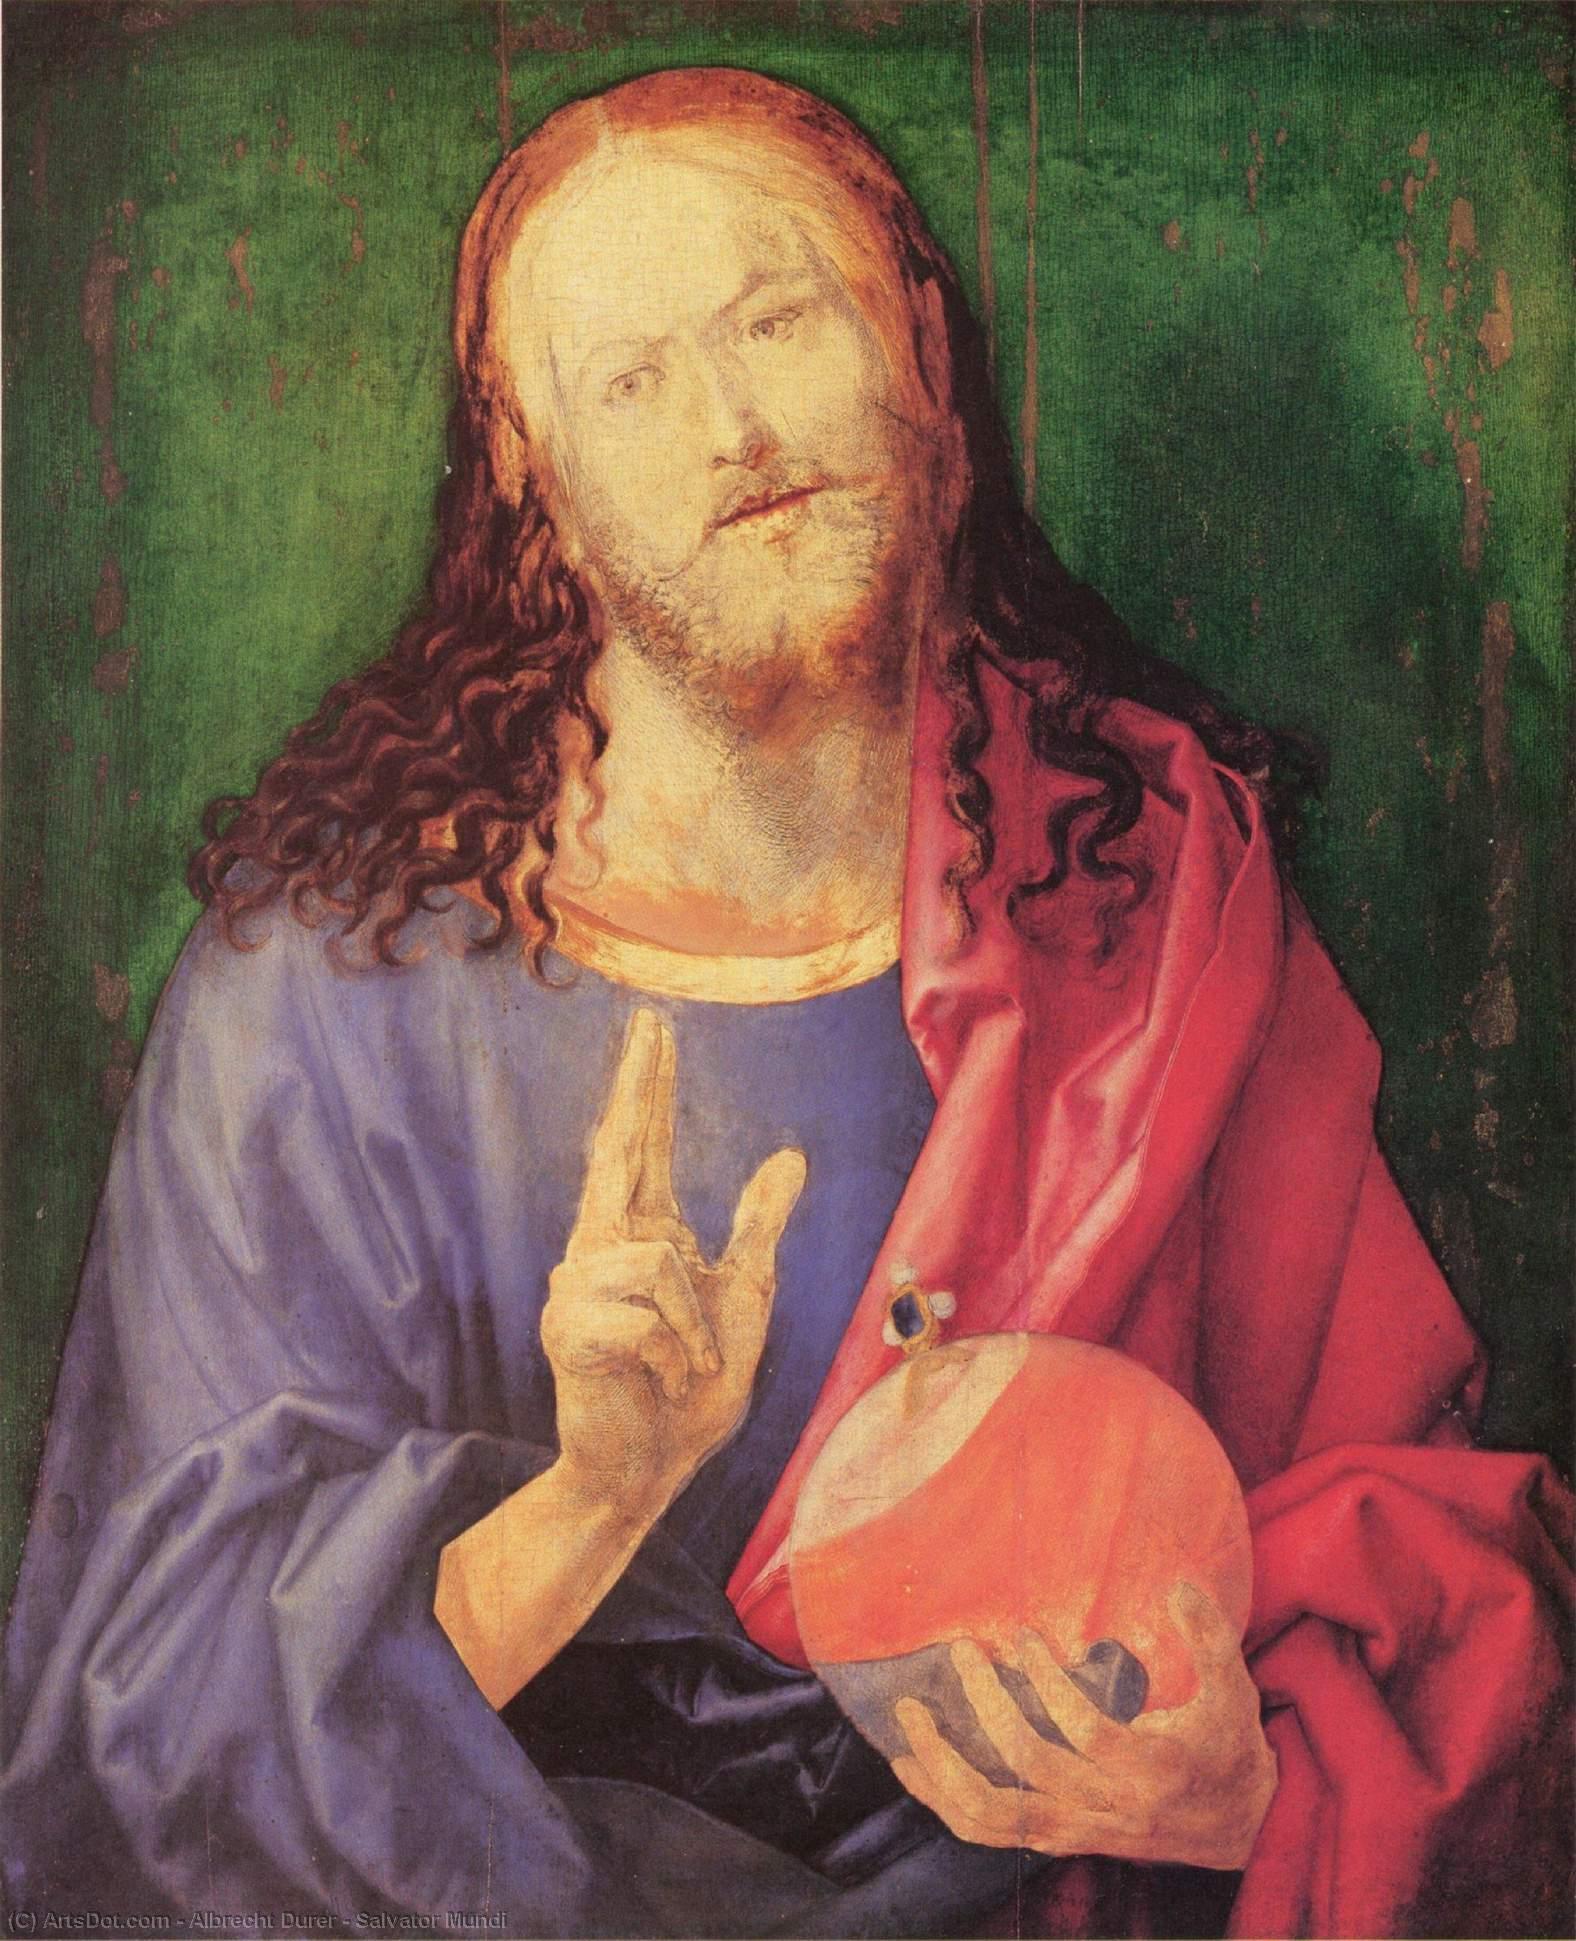 WikiOO.org - Encyclopedia of Fine Arts - Målning, konstverk Albrecht Durer - Salvator Mundi